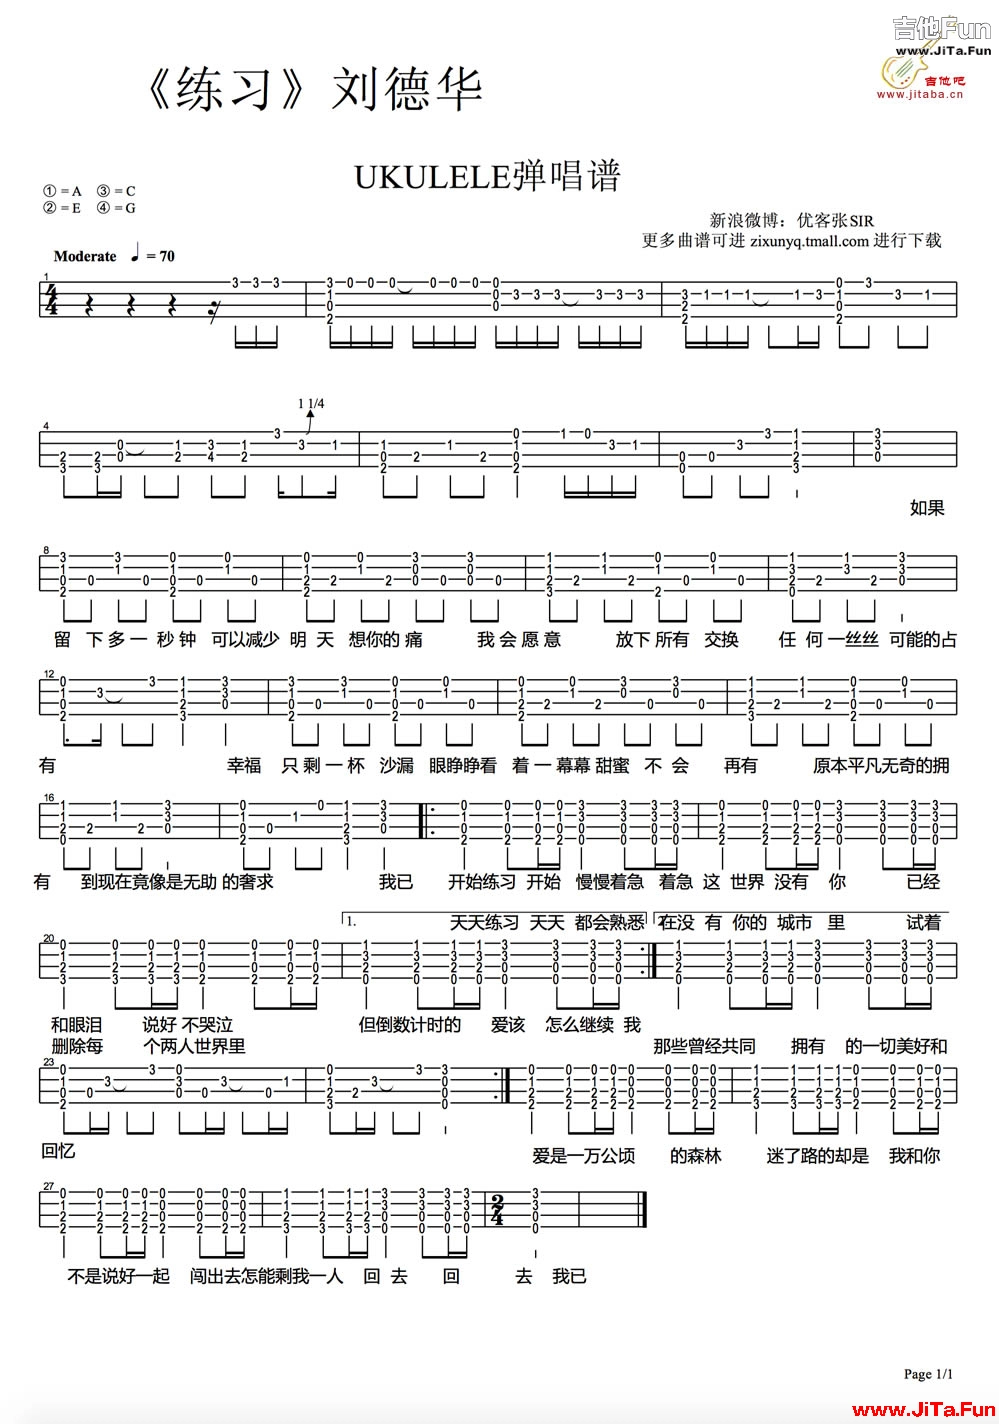 劉德華《練習》ukulele烏克麗麗譜